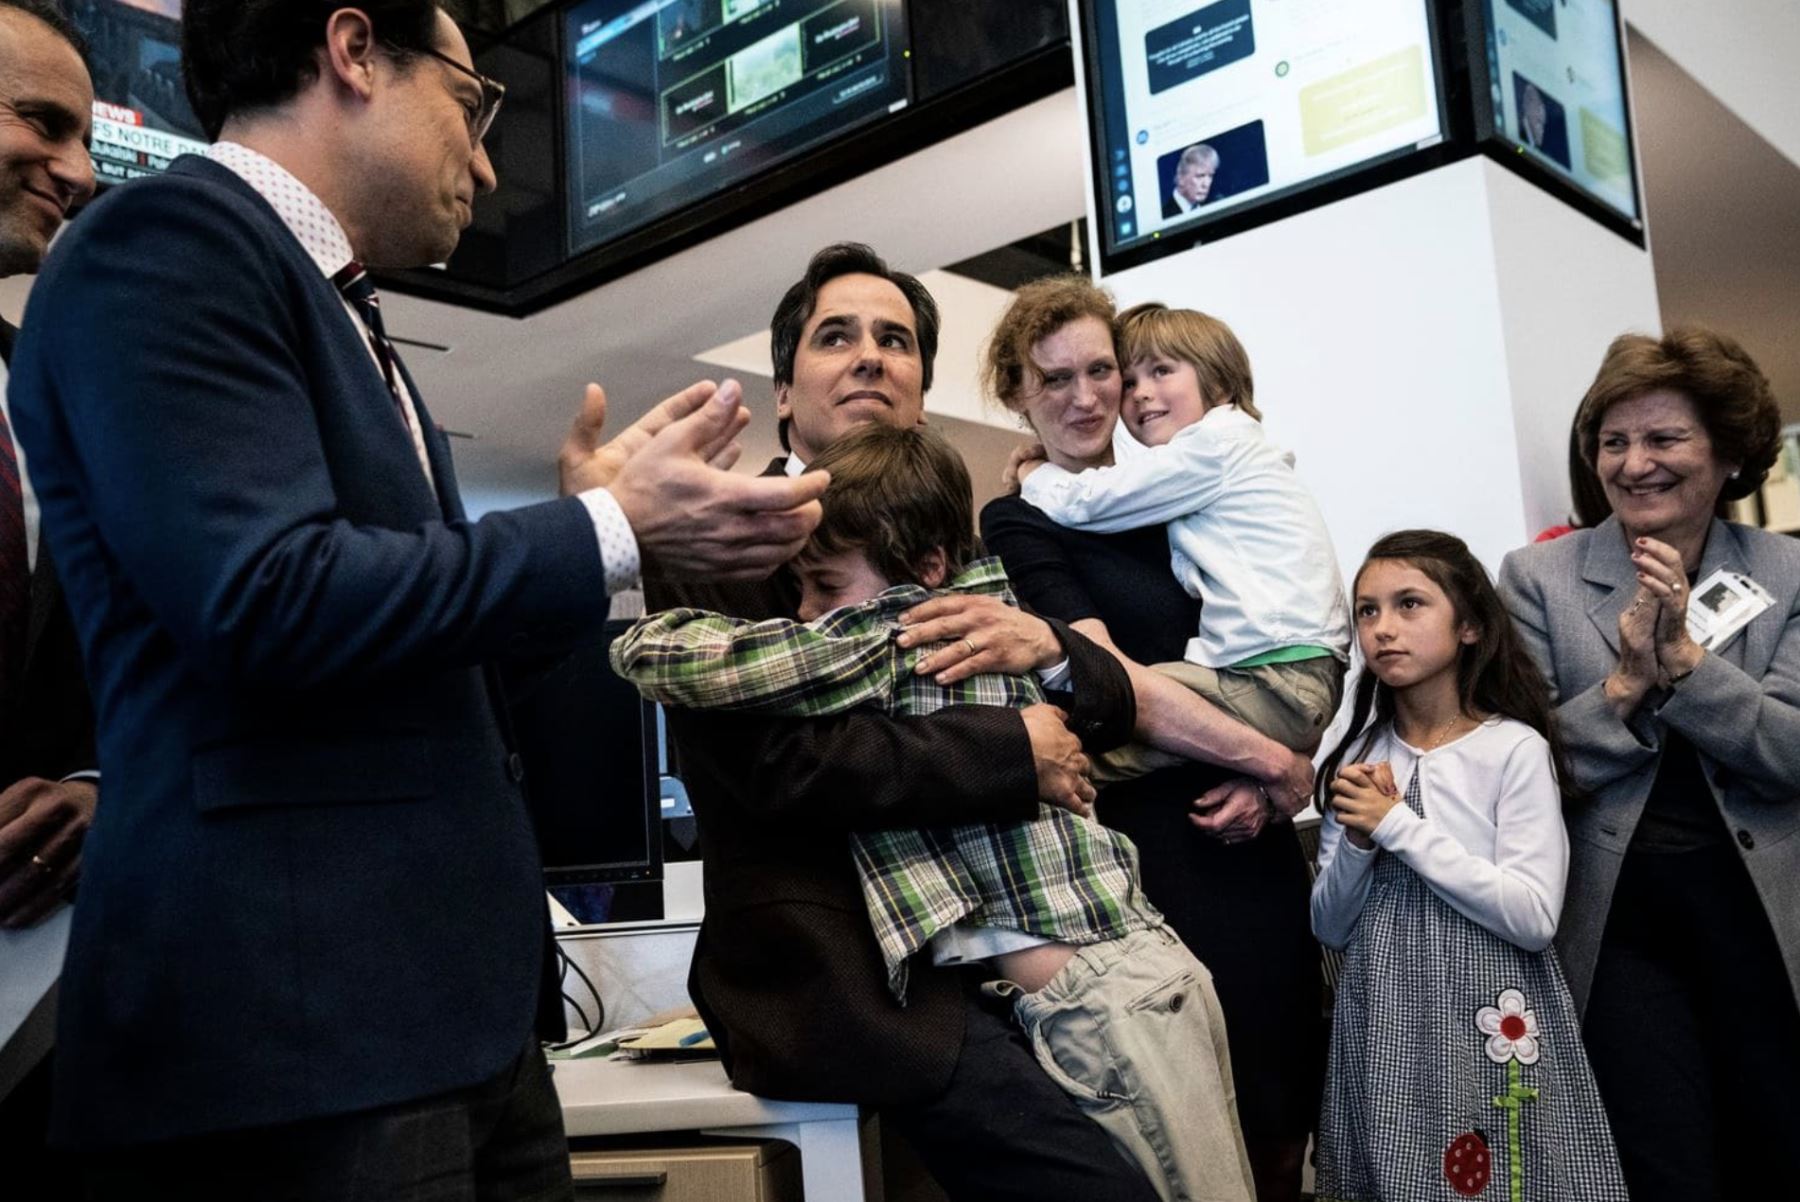 6/04/2019 Carlos Lozada con su familia tras ganar el premio Pulitzer. Foto: Jabin Botsford/The Washington Post.